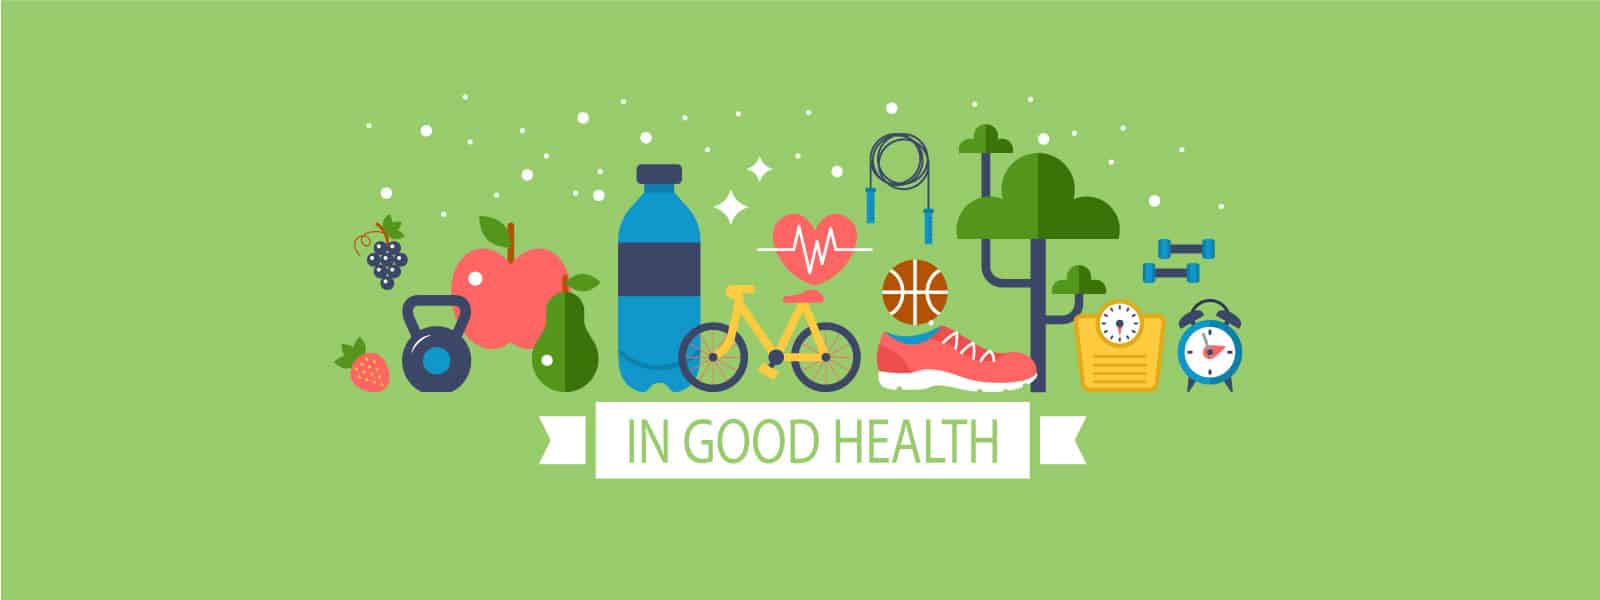 PSA in Good Health April 2020 Tips